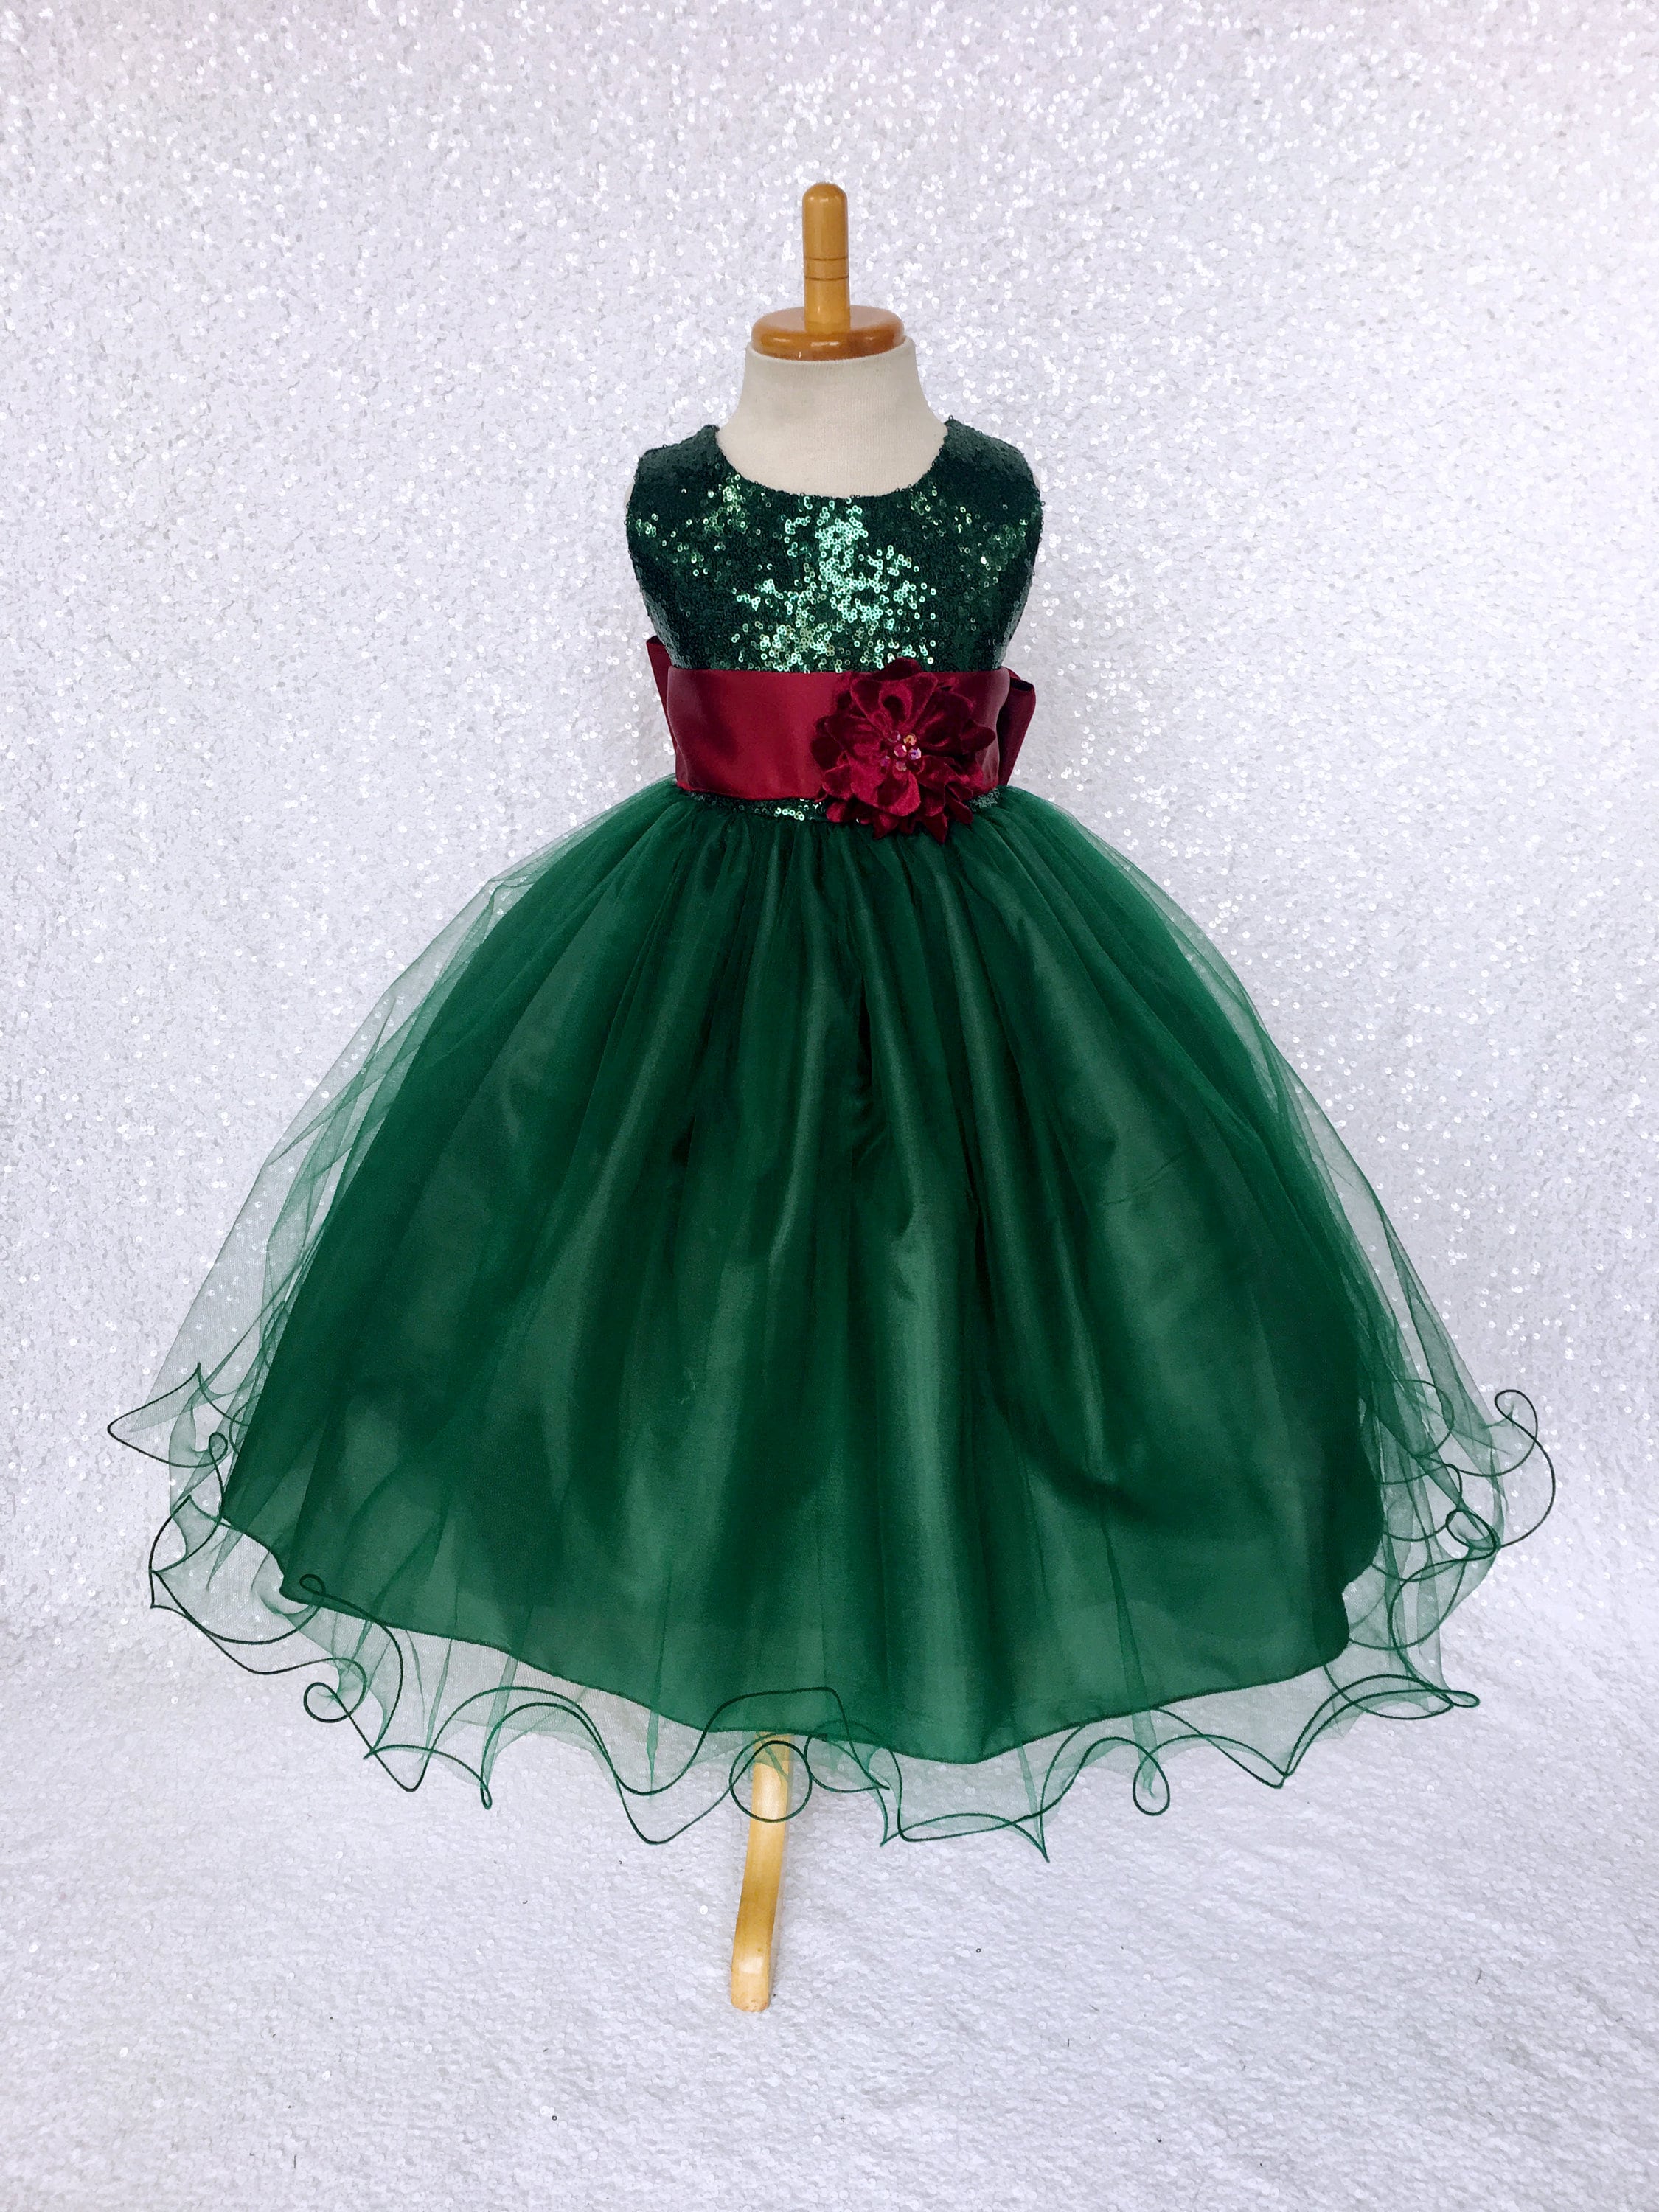 Christmas Elegant Dress Tulle Hunter Green Sequin Sash | Etsy